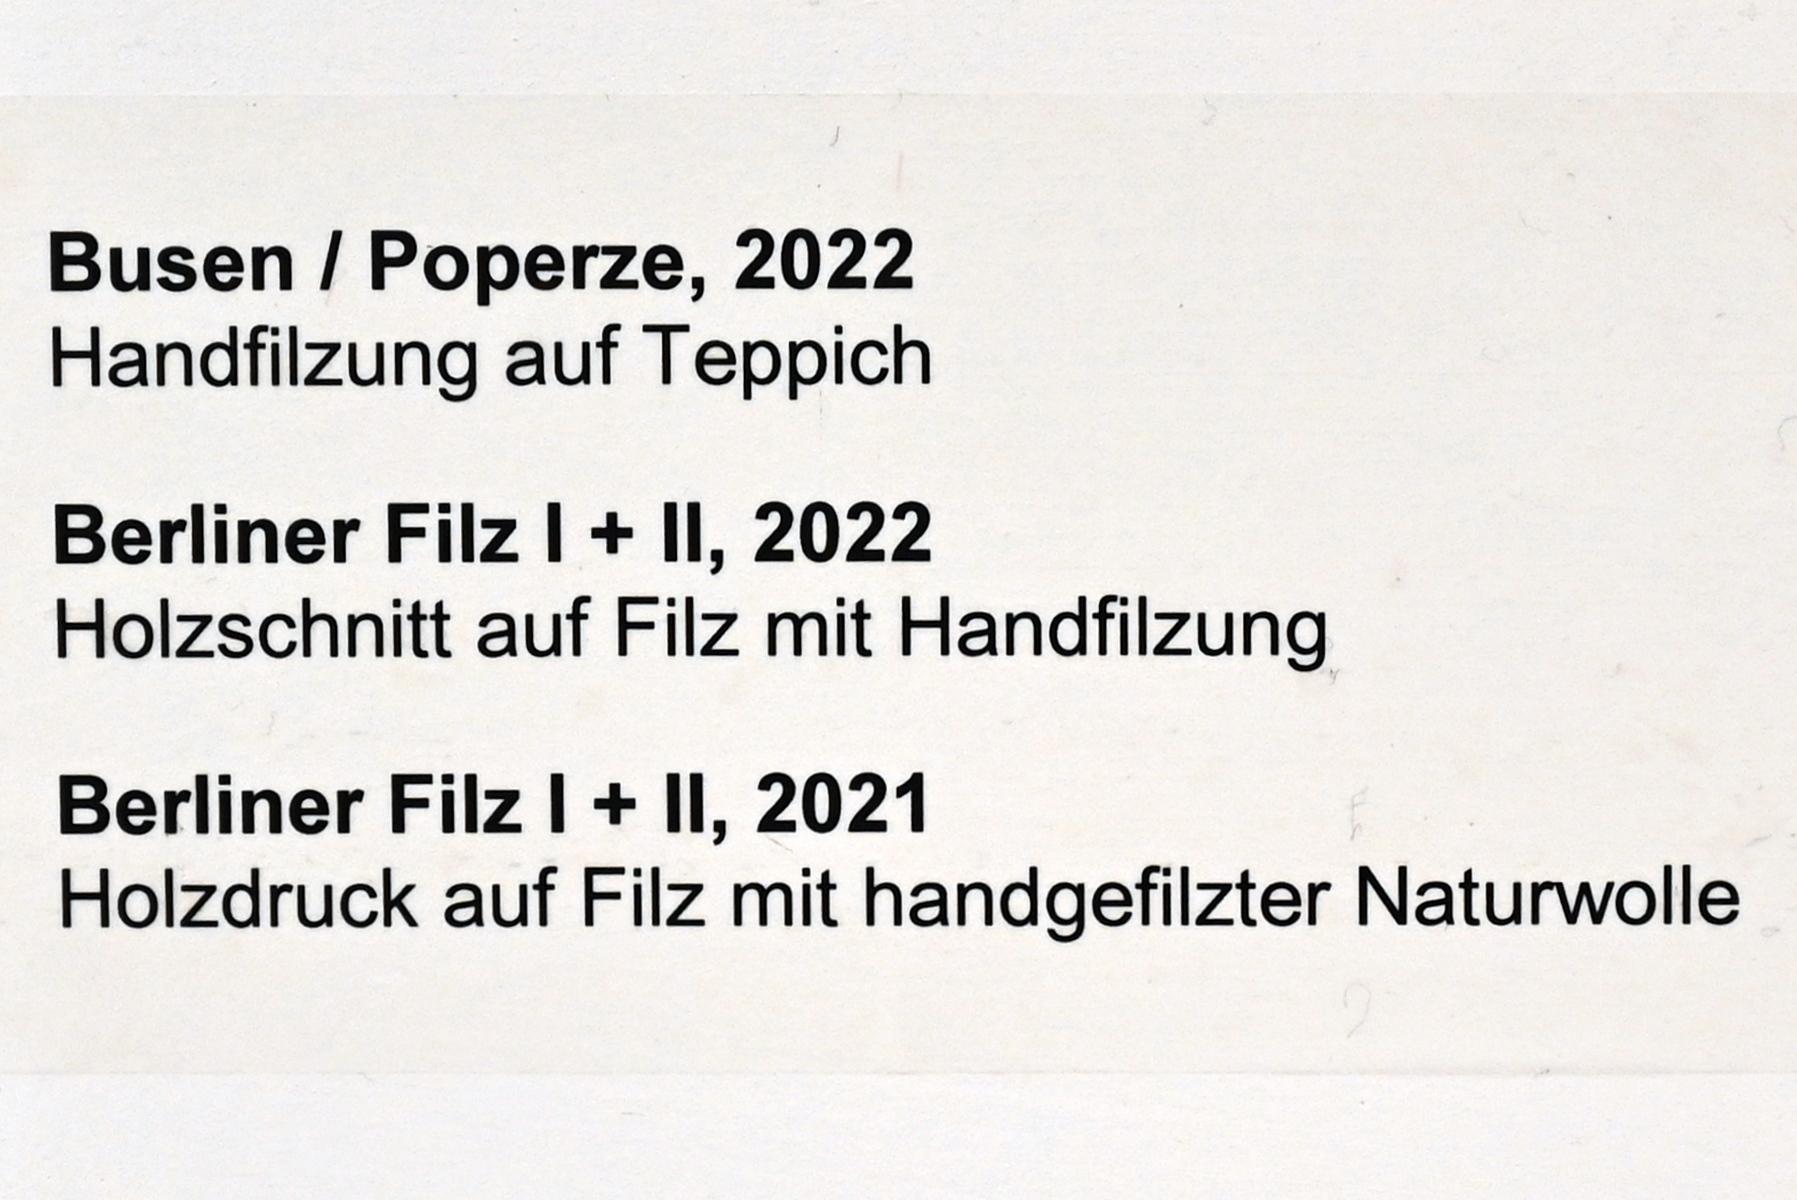 Verena Issel (2021–2022), Berliner Filz II, Neumarkt in der Oberpfalz, Museum Lothar Fischer, Ausstellung "VERENA ISSEL" vom 26.06.-09.10.2022, Raum 2, 2021, Bild 2/2